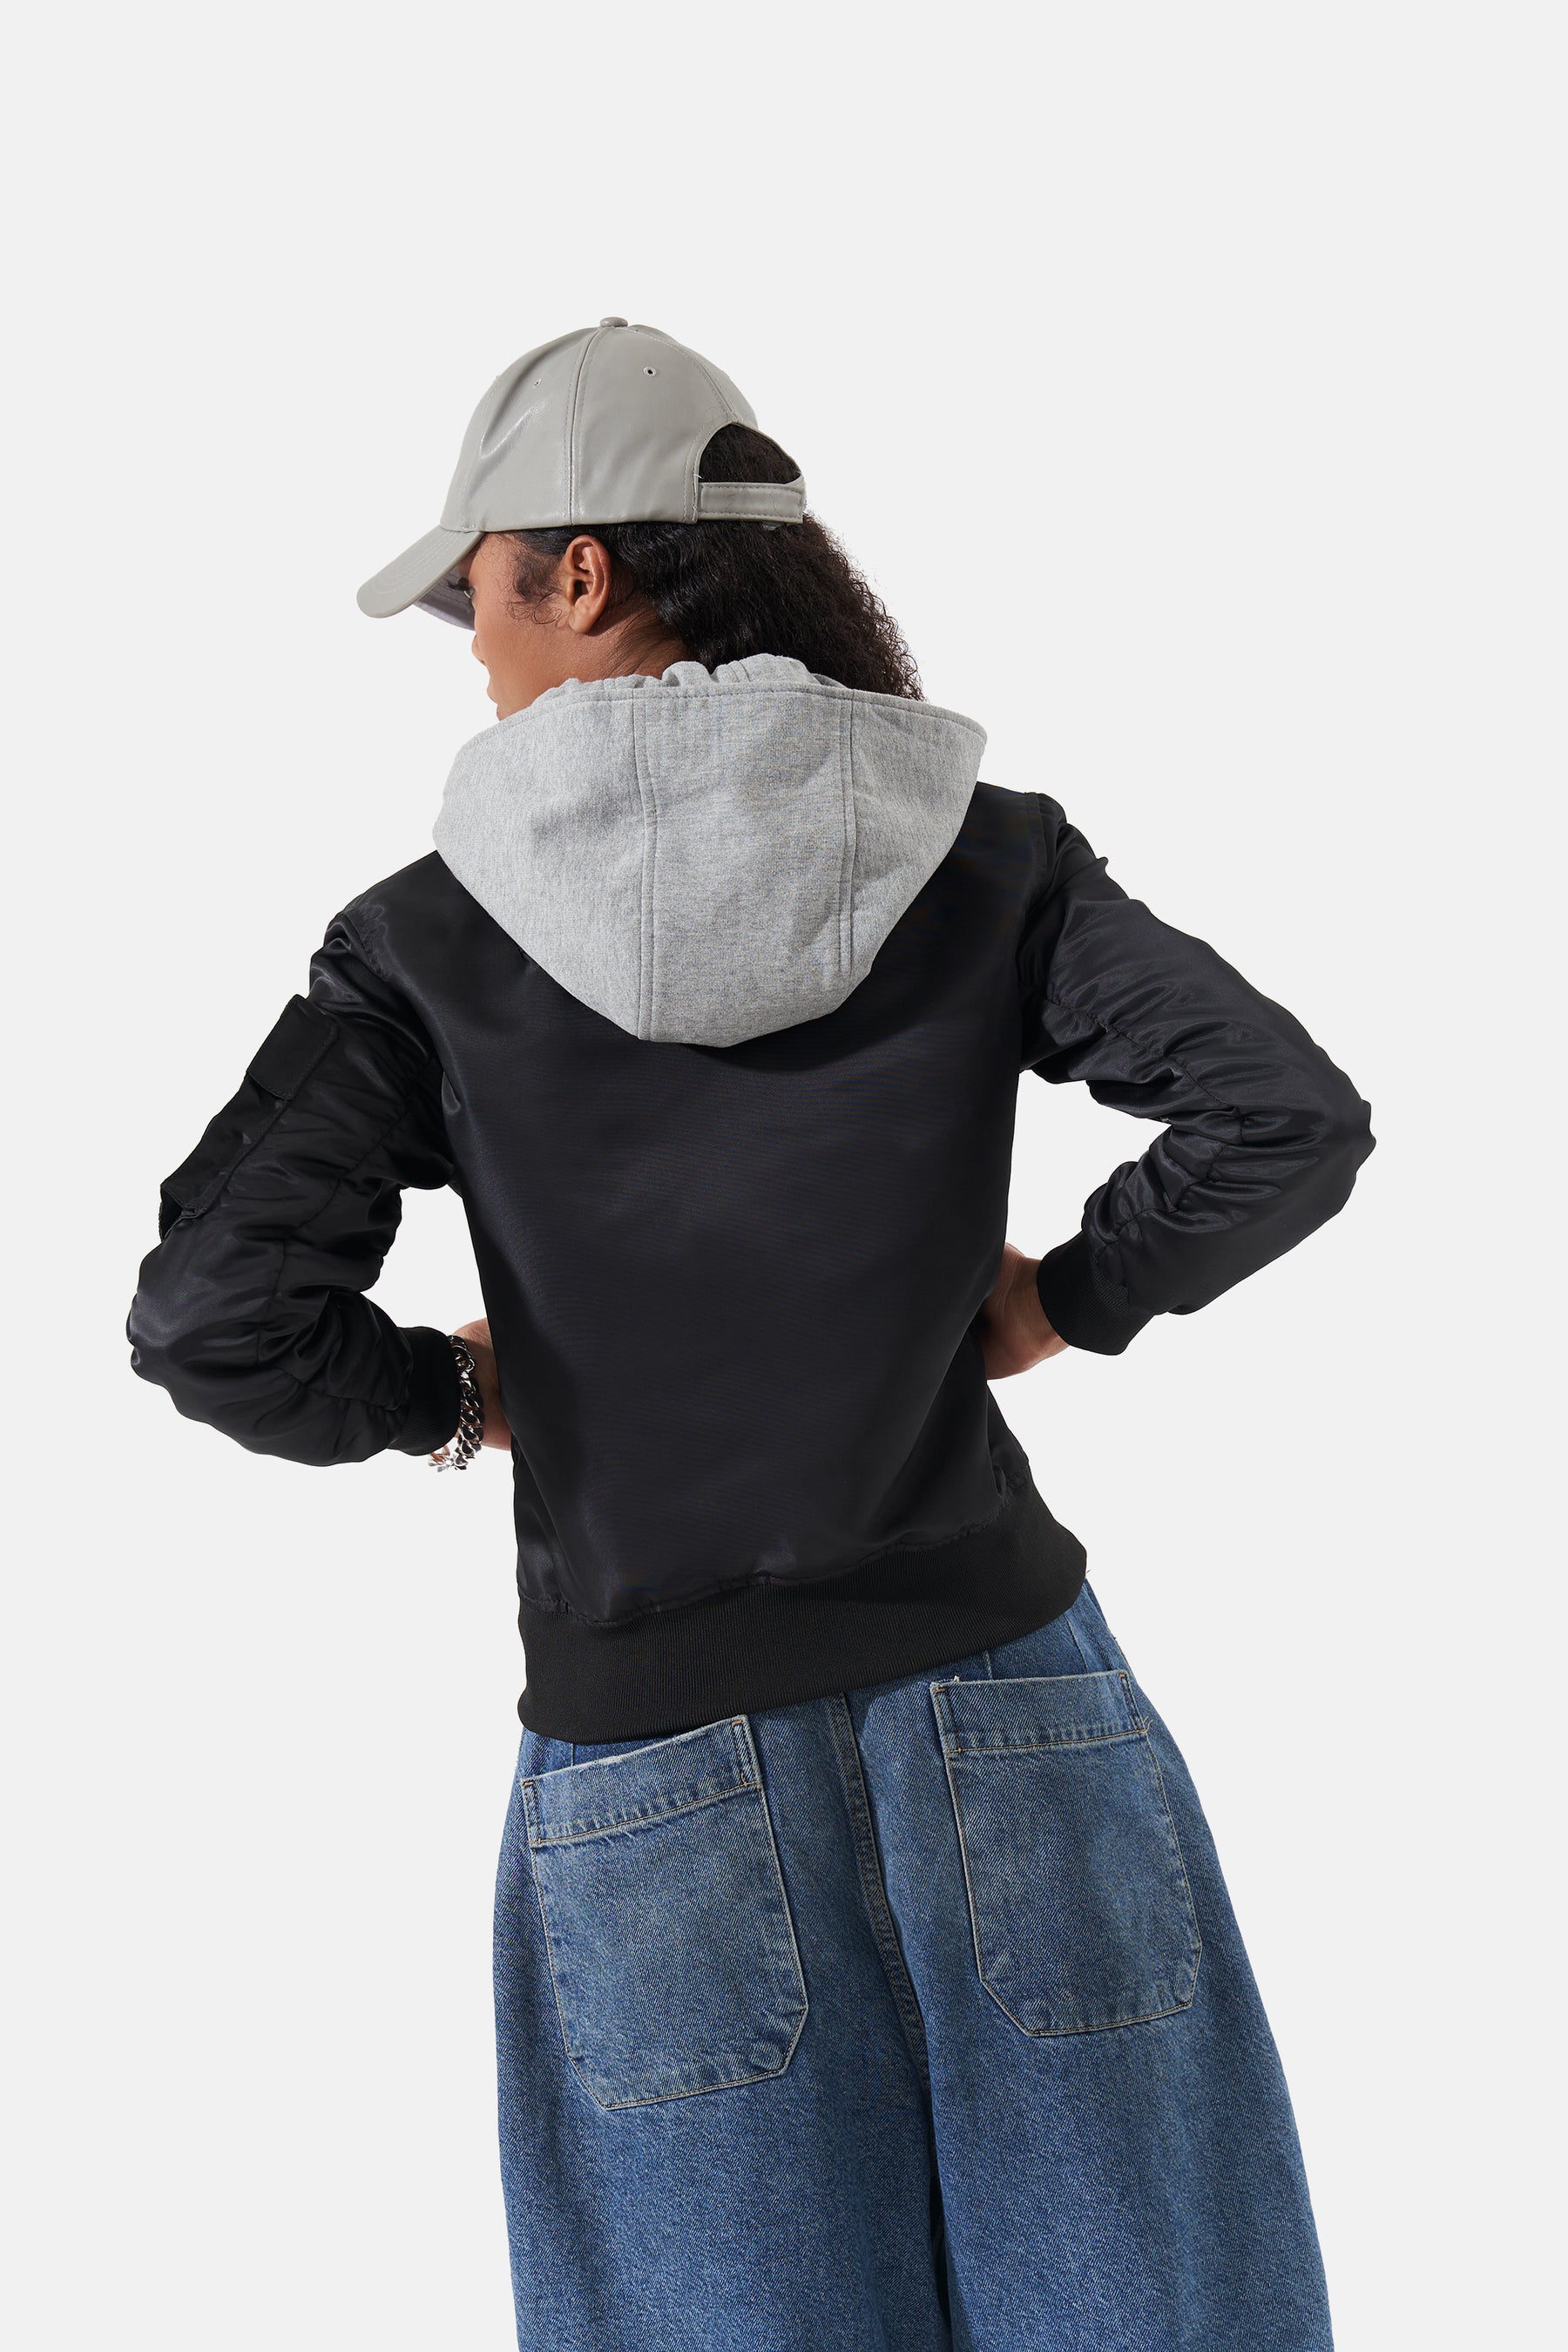 Enzo - Nylon Jacket With Detachable Hood